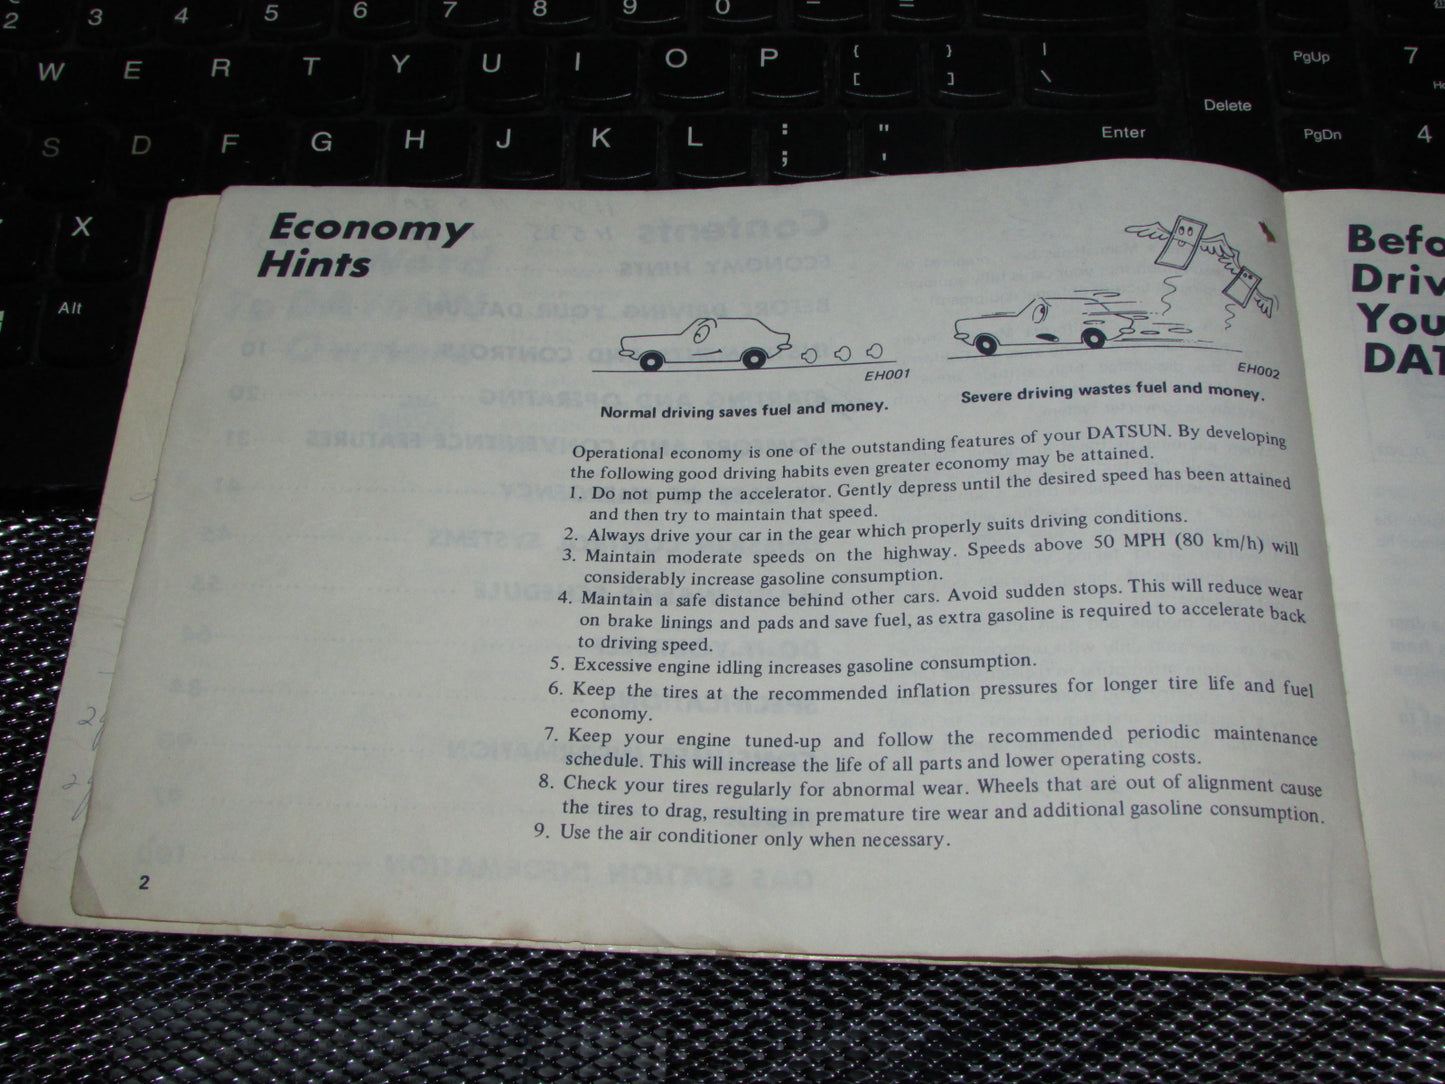 Datsun 200SX (1978) Owners Manual